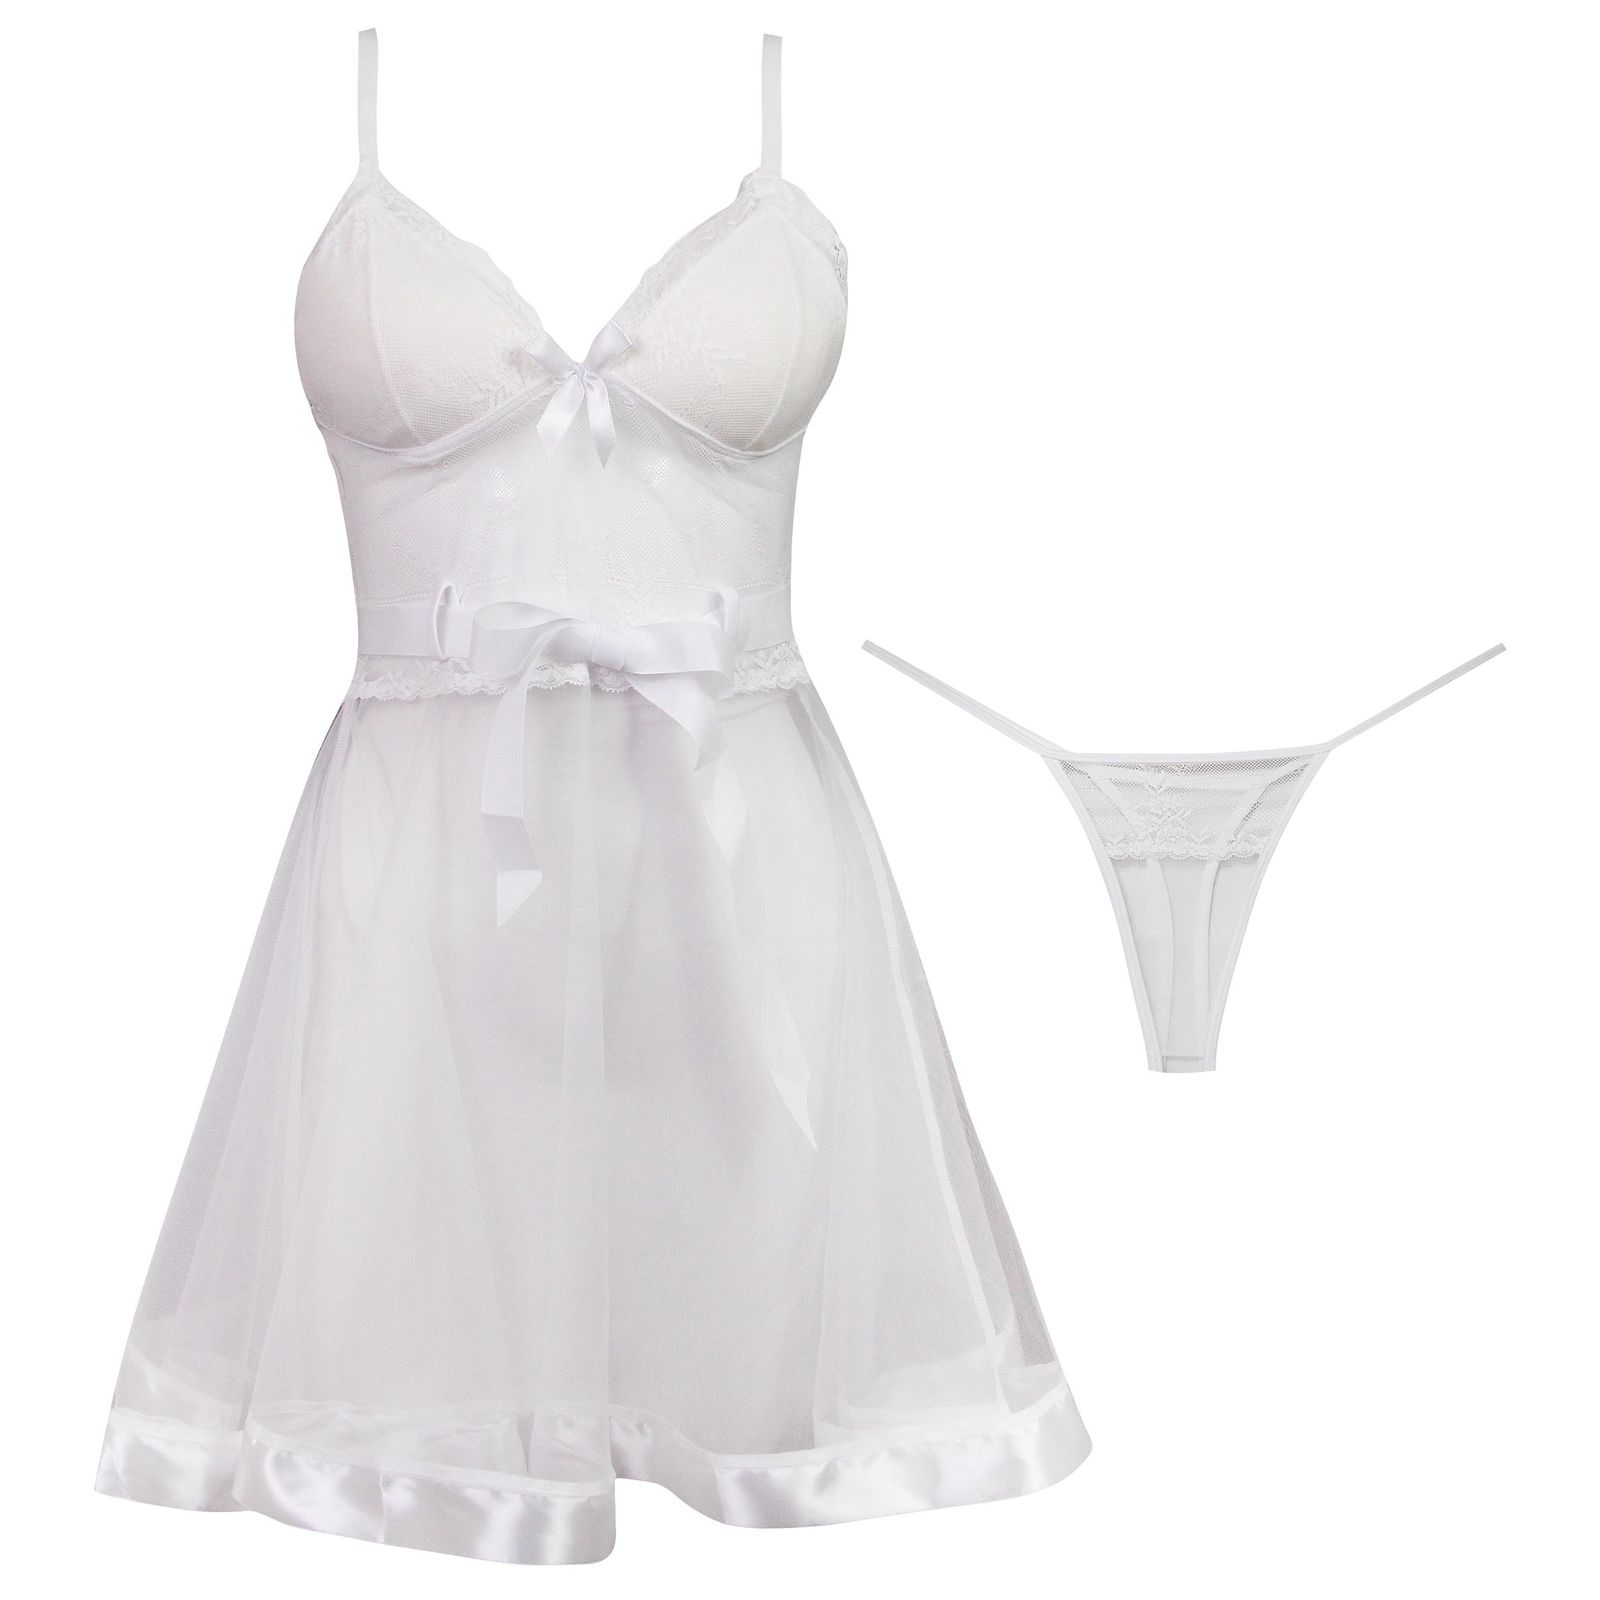 لباس خواب زنانه ماییلدا مدل گیپور گلدار کد 3685-820 رنگ سفید -  - 10